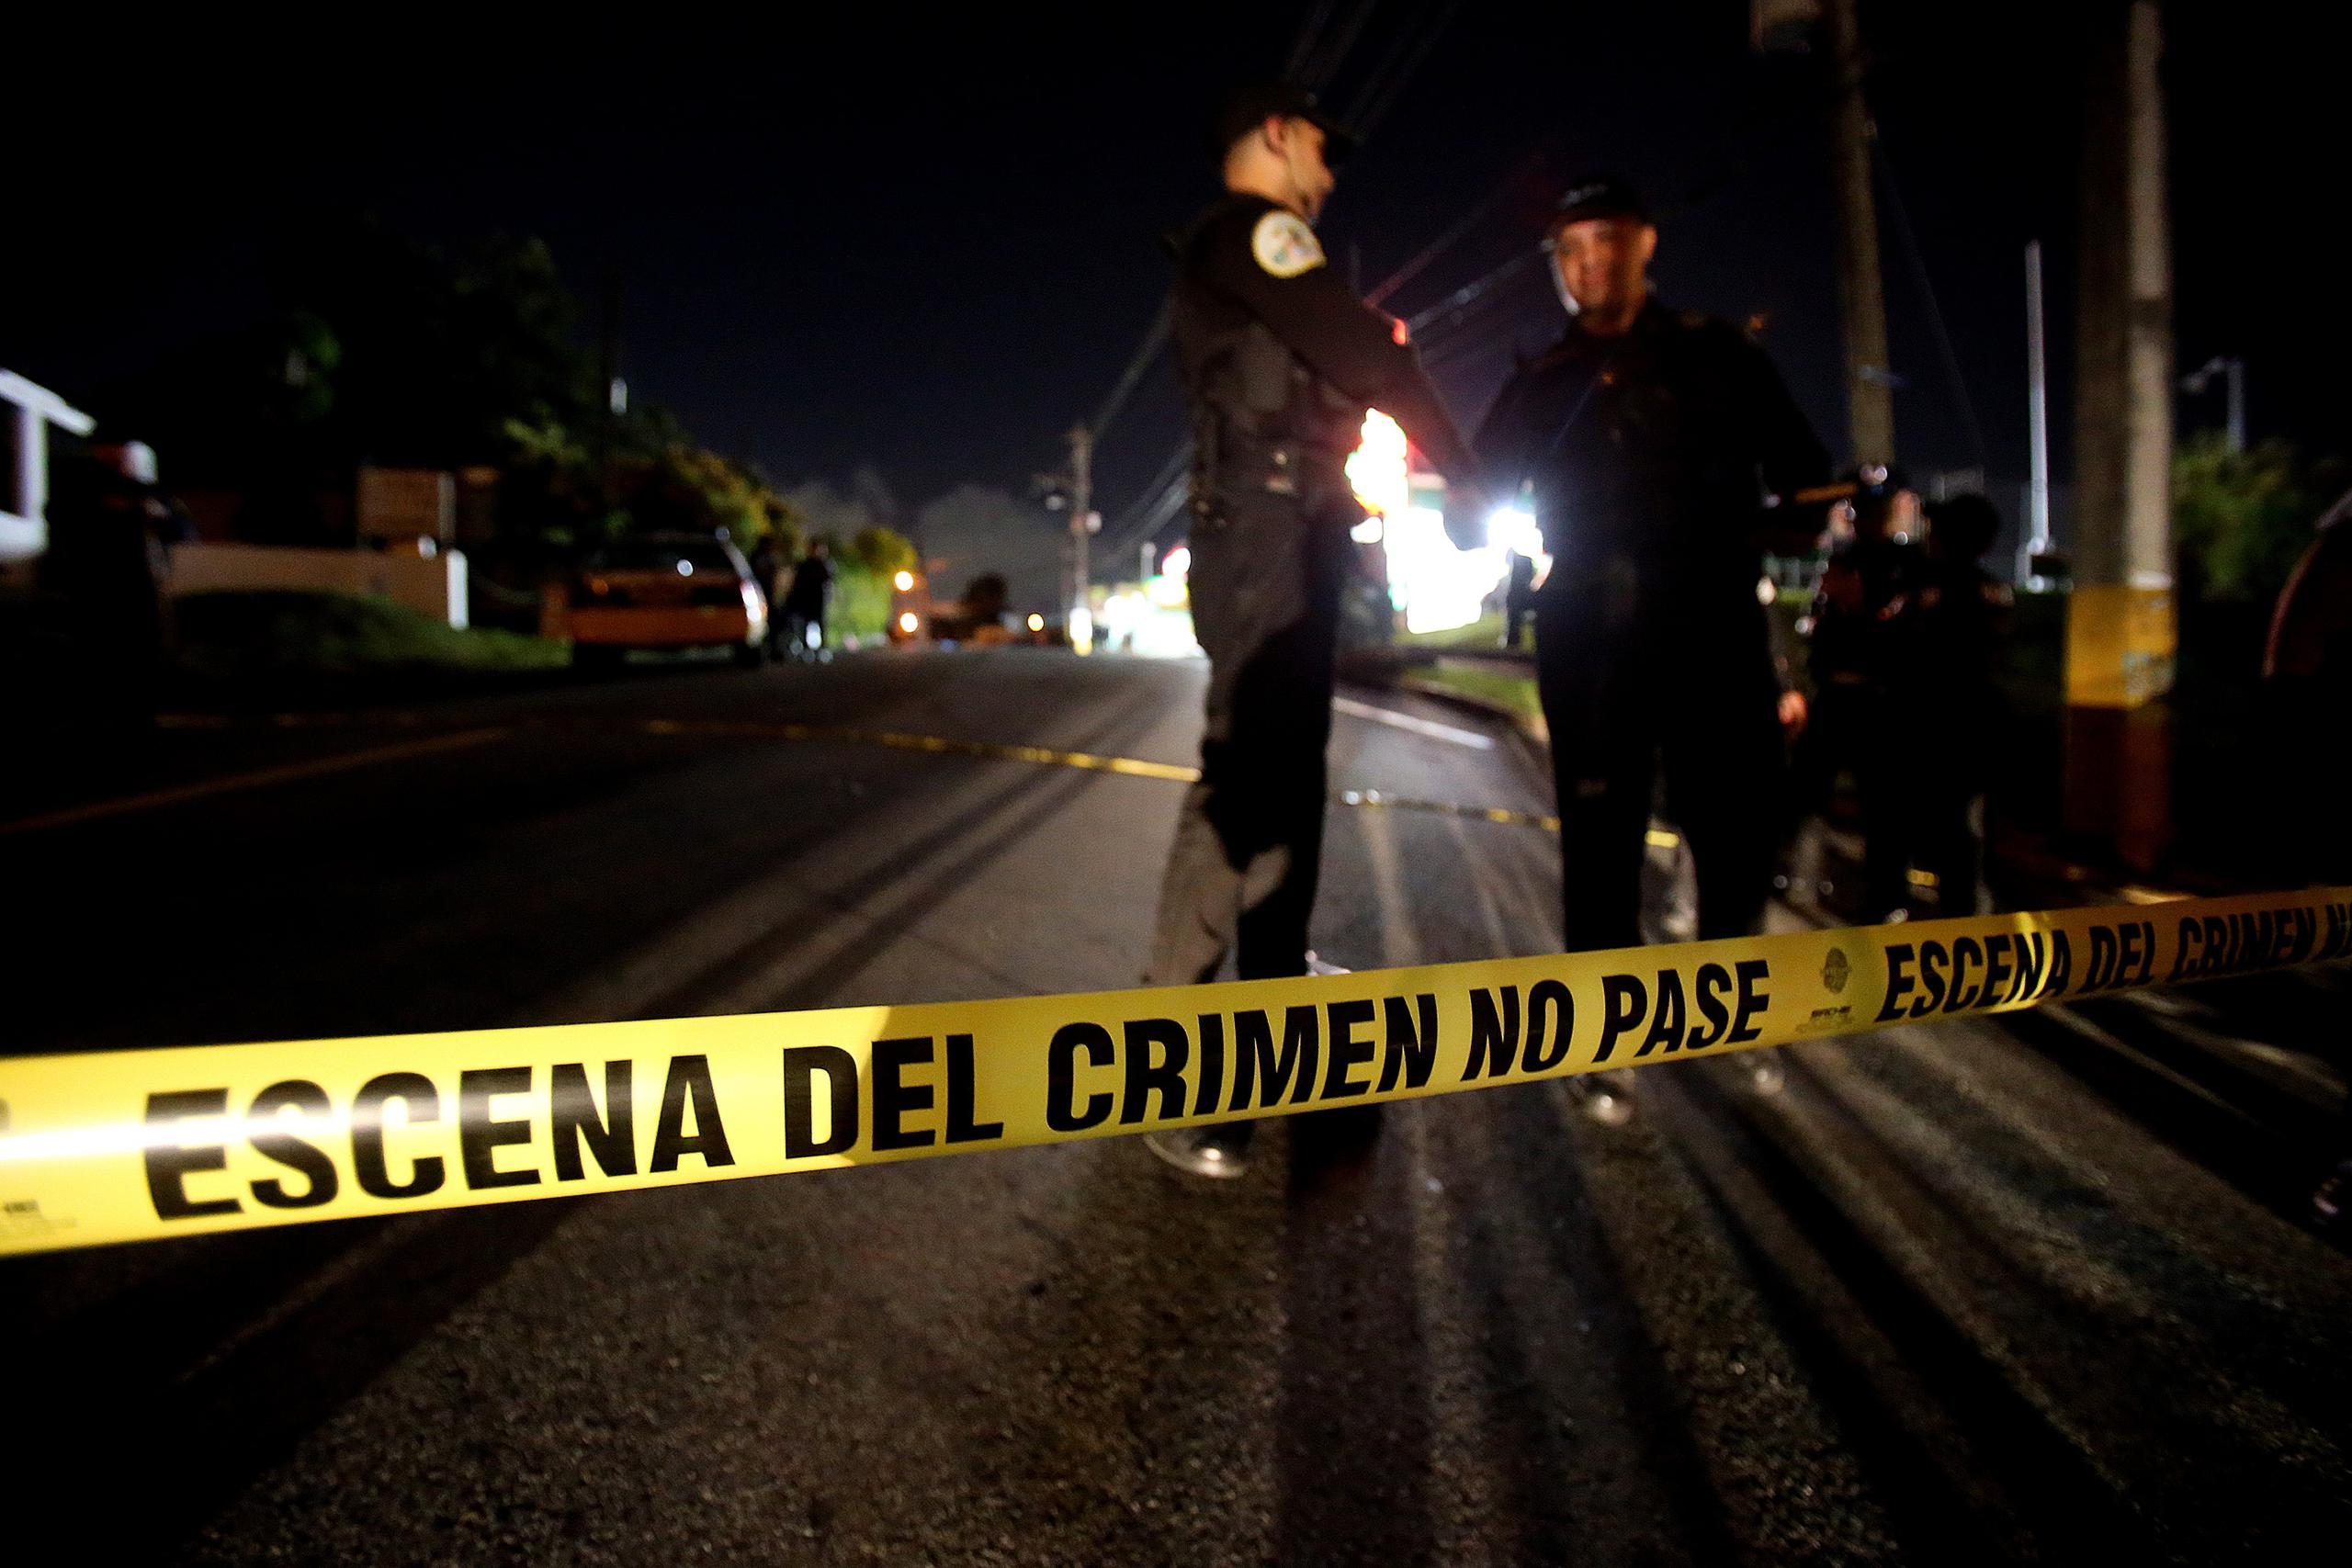 La División de Homicidios de San Juan investiga los hechos. (Archivo / GFR Media)